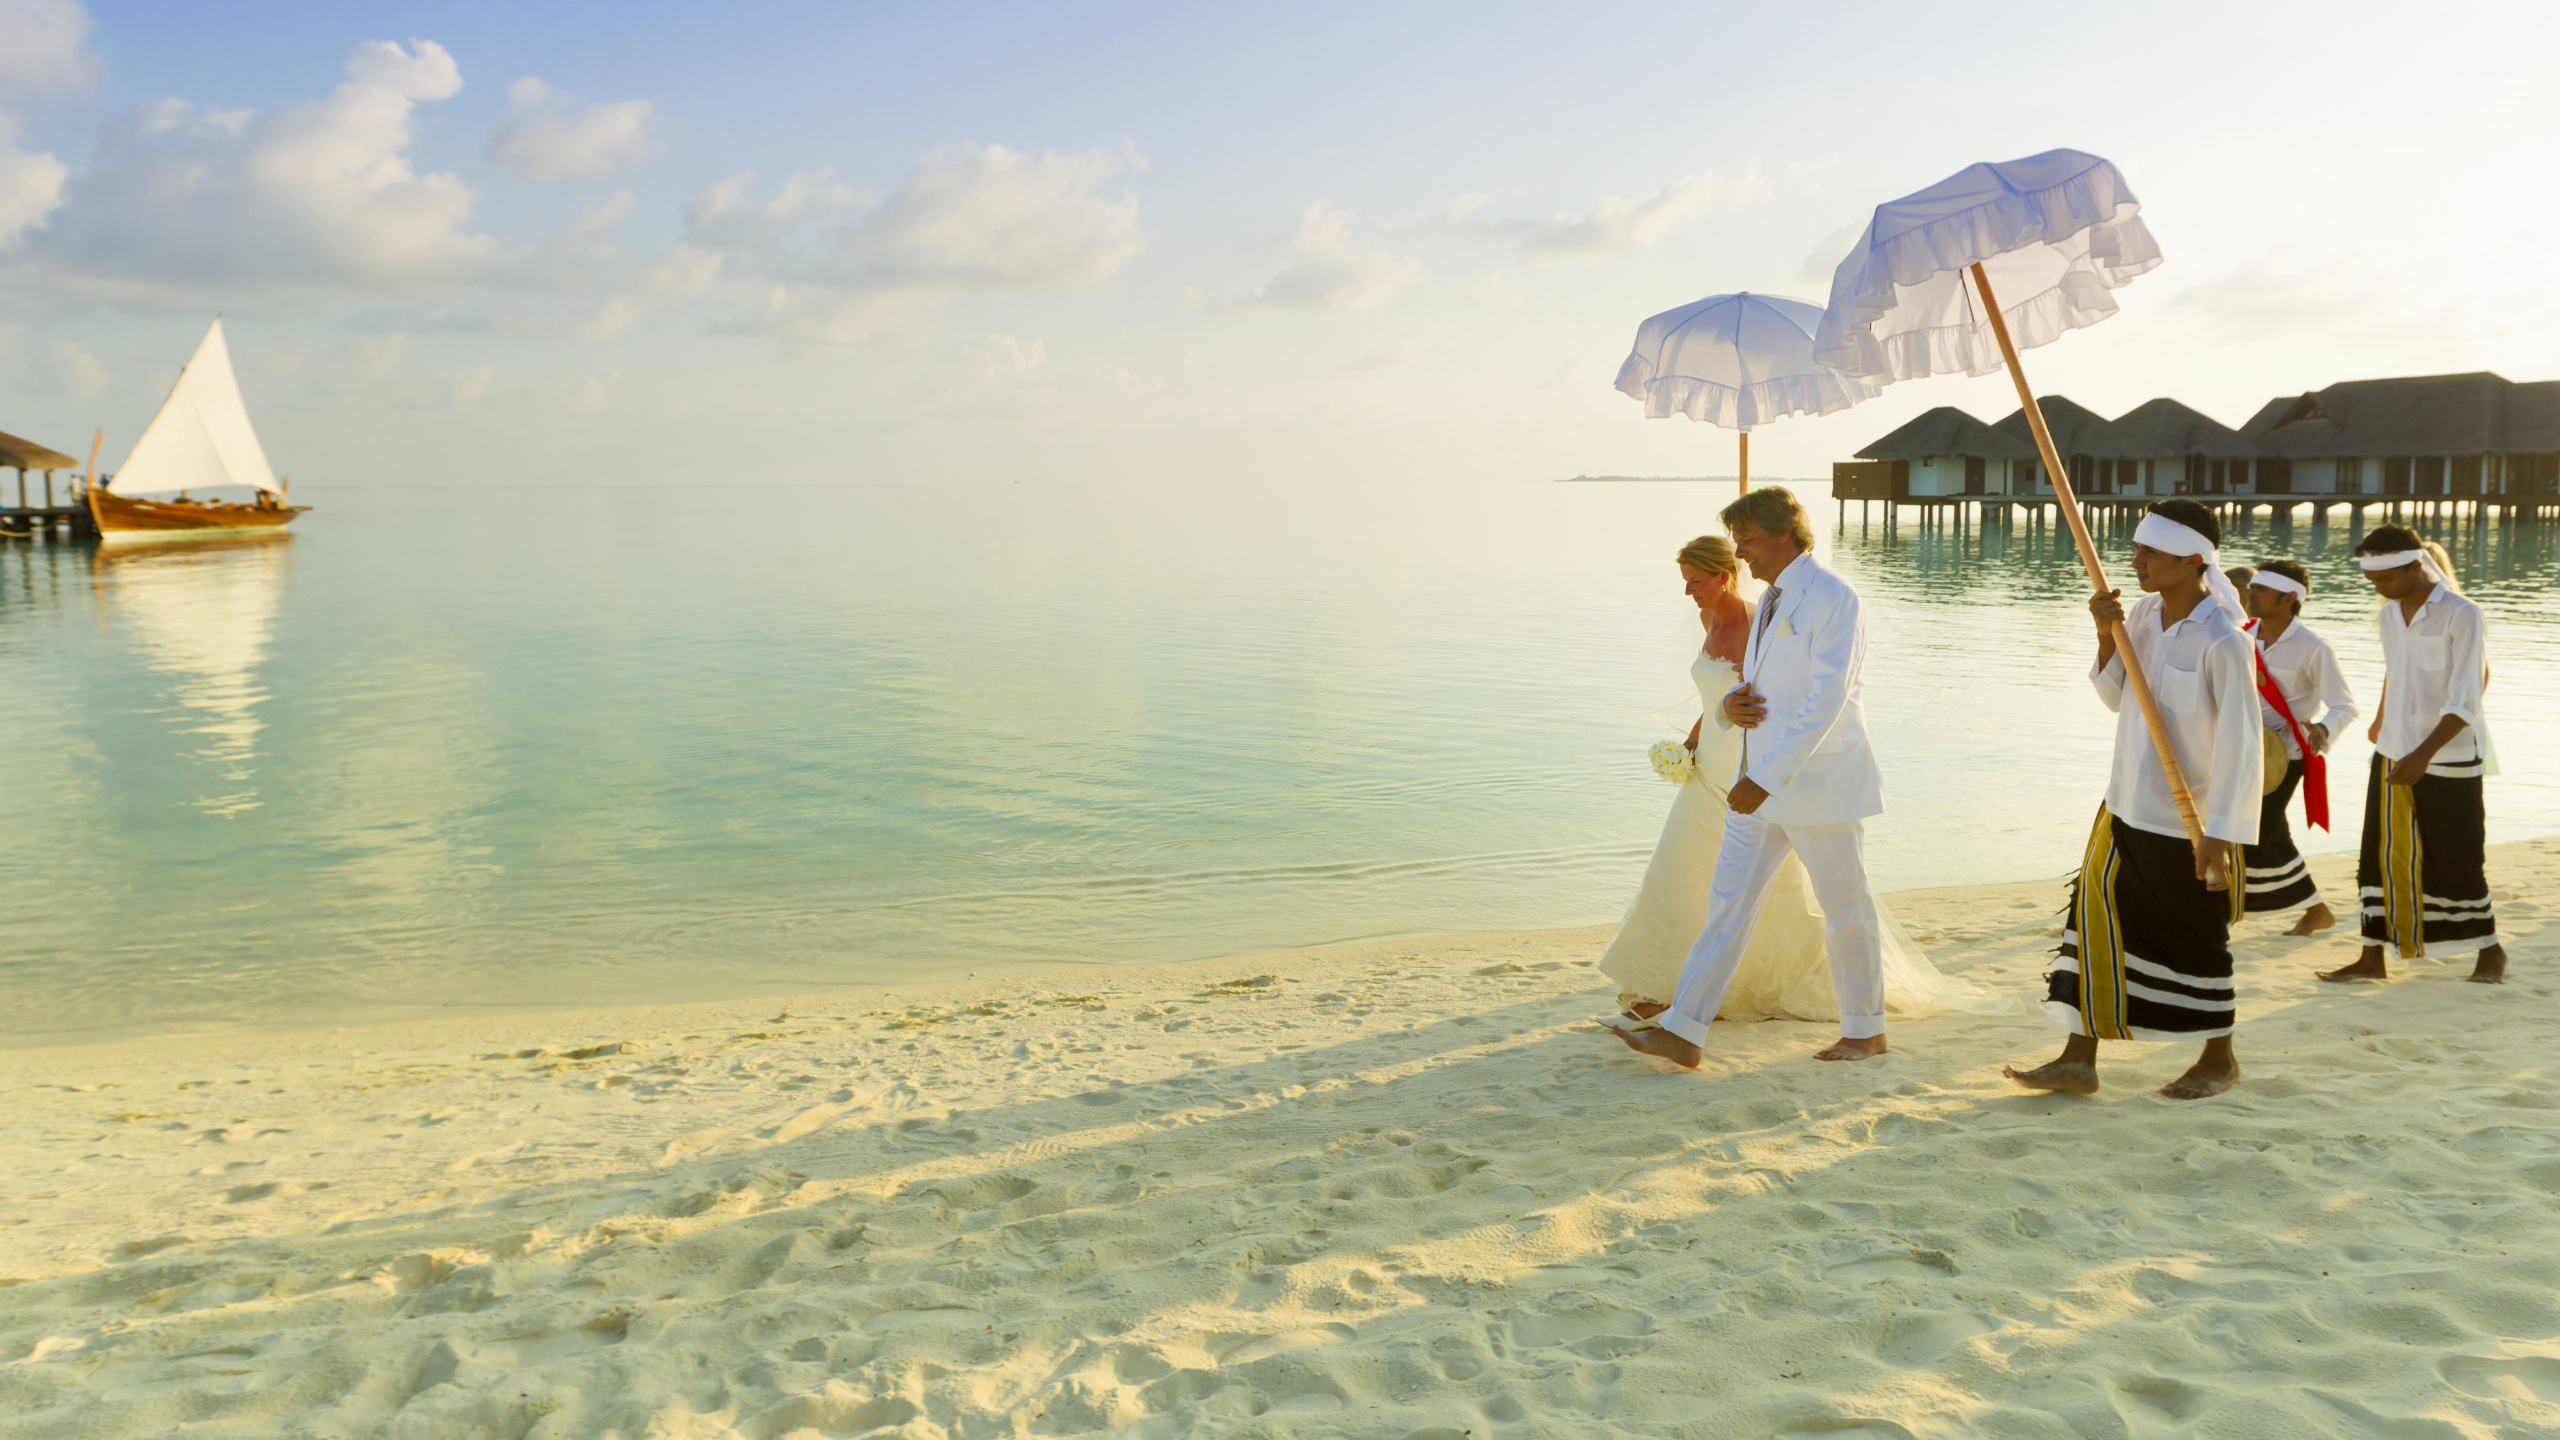 马尔代夫维拉沙鲁岛度假村, 度假, 蜜月, 旅游业, 大海 壁纸 2560x1440 允许